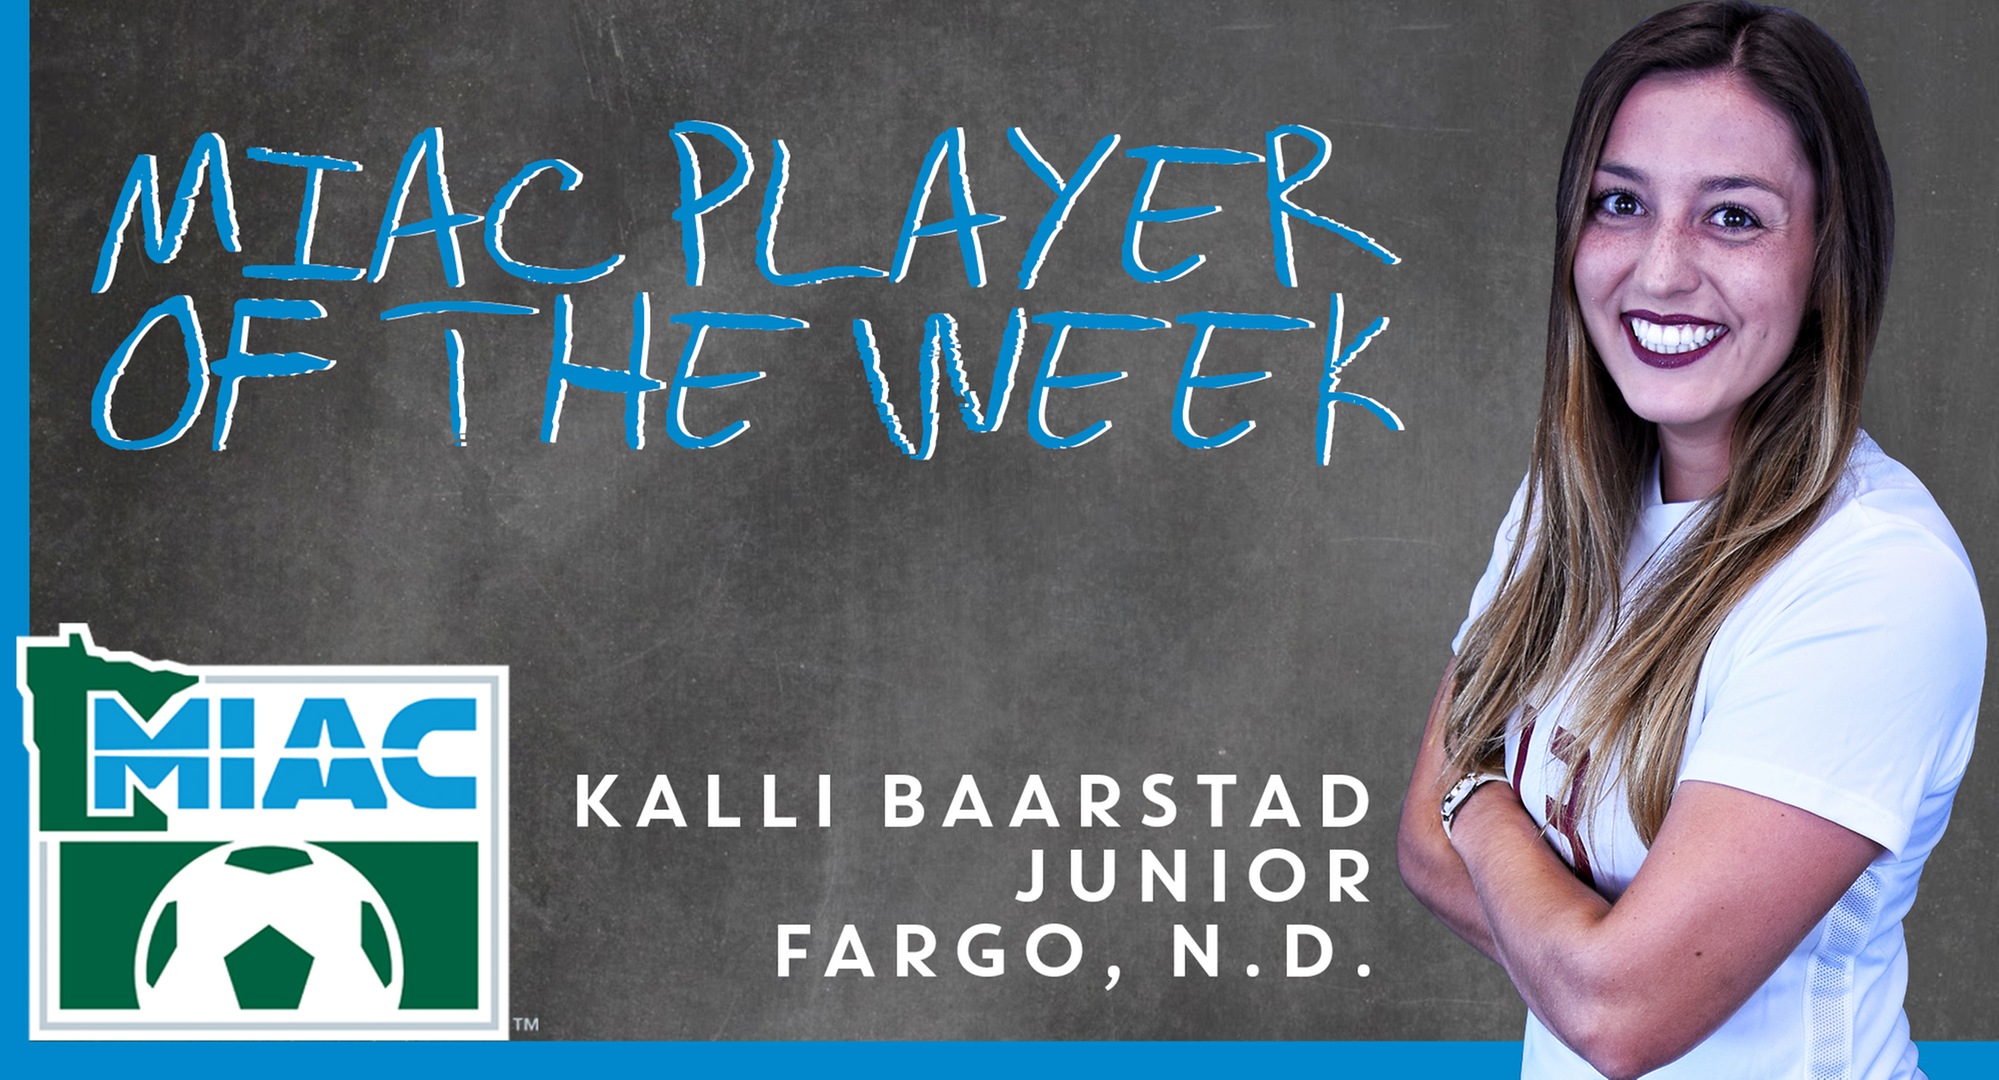 Kalli Baarstad was named the MIAC Player of the Week.